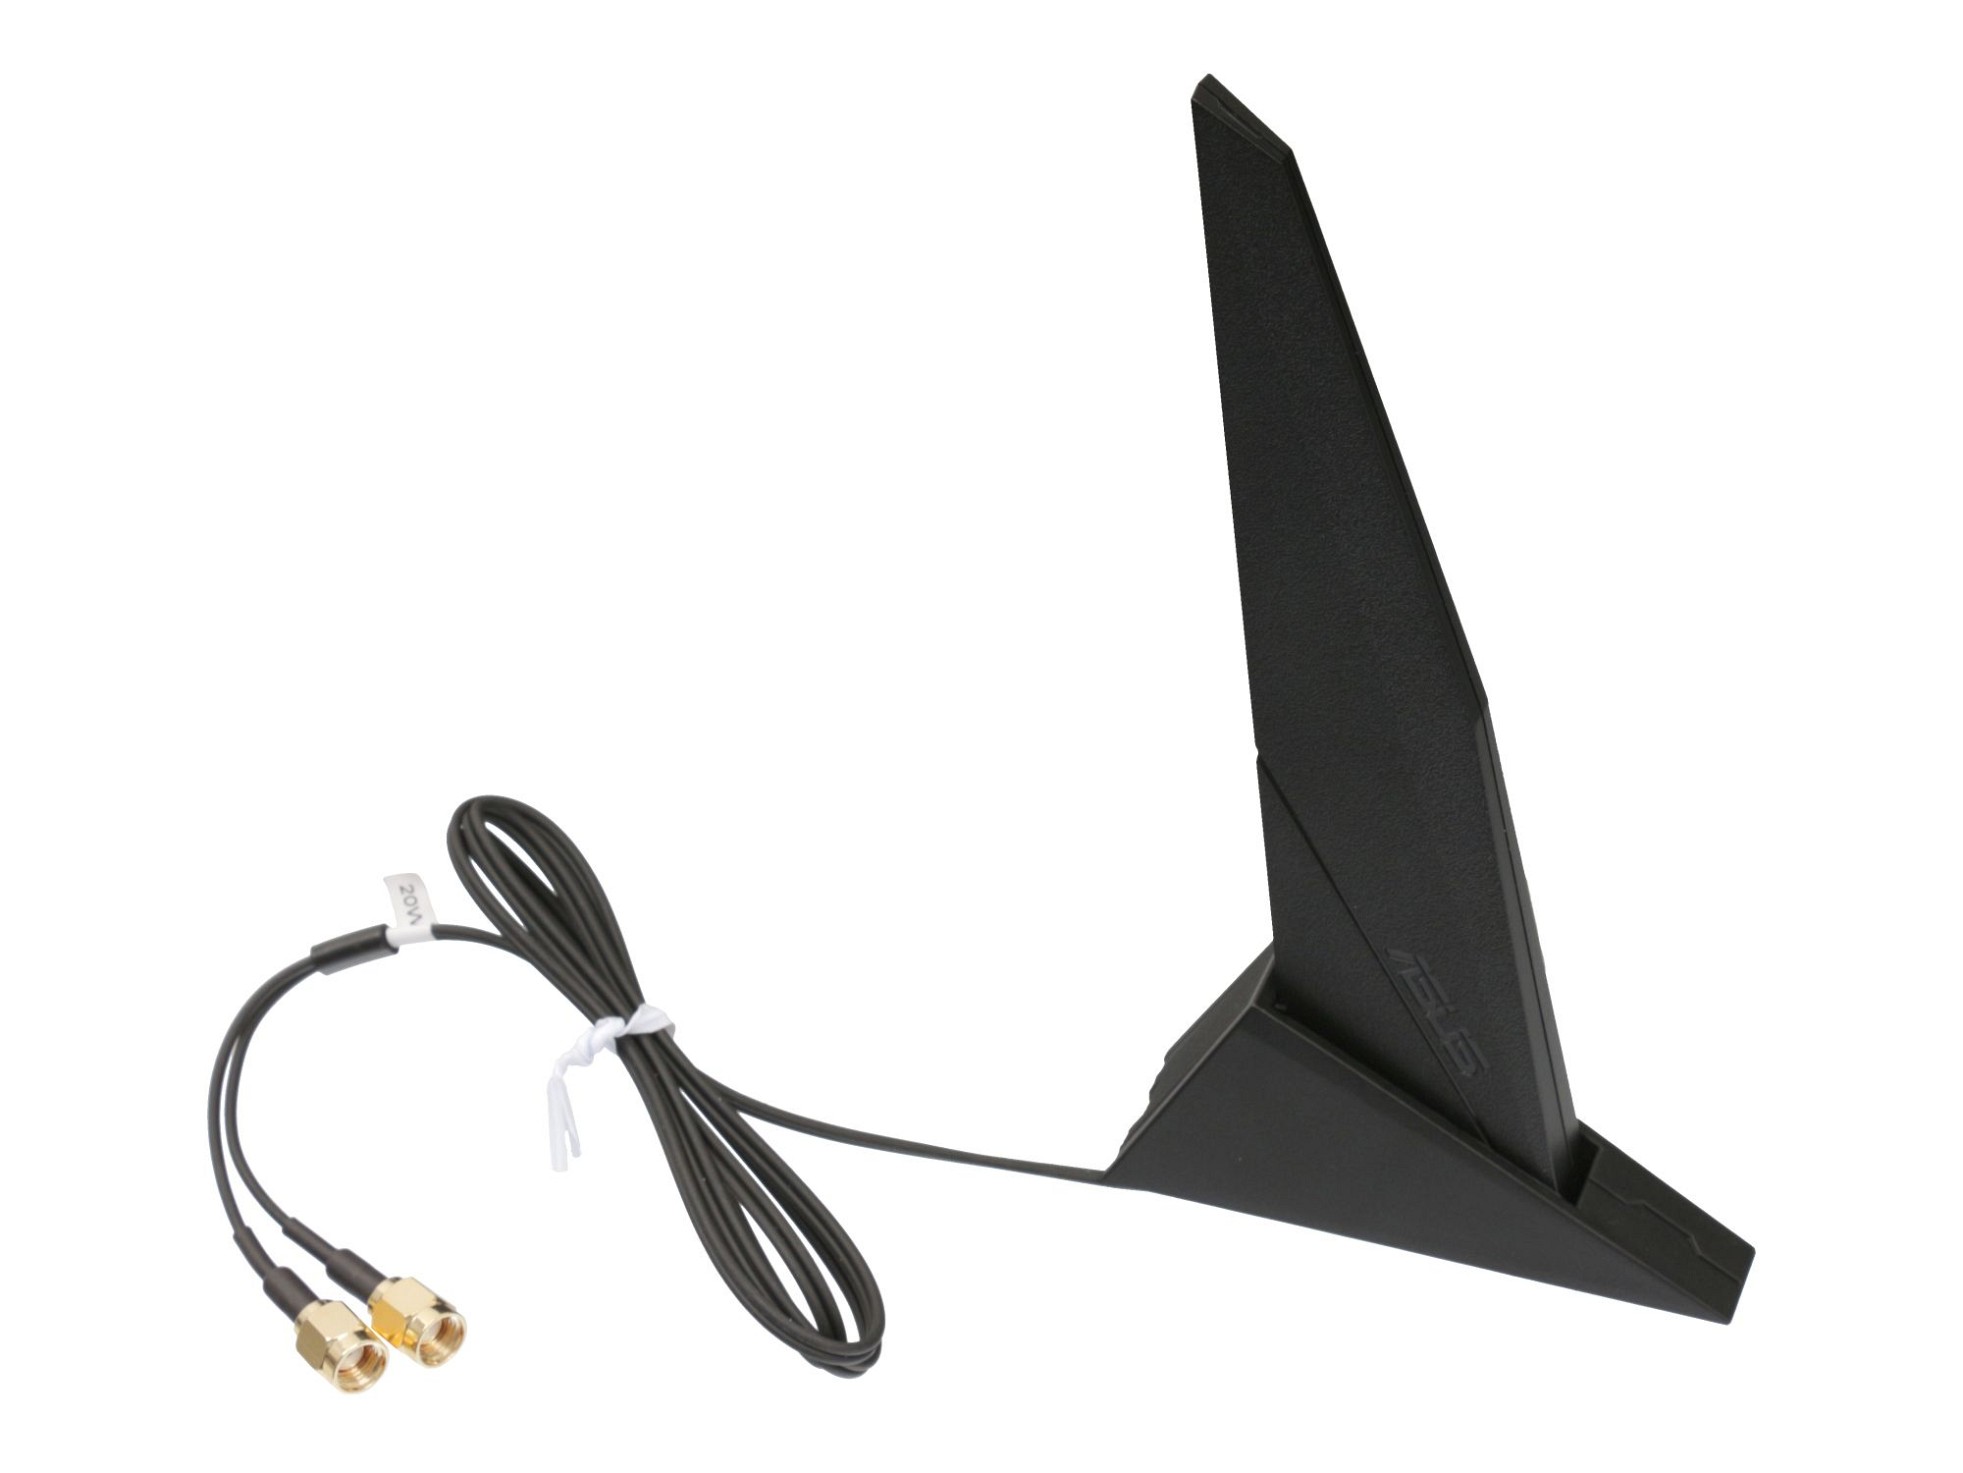 Externe Asus RP-SMA DIPOLE Antenne für Asus ROG CROSSHAIR VIII DARK HERO